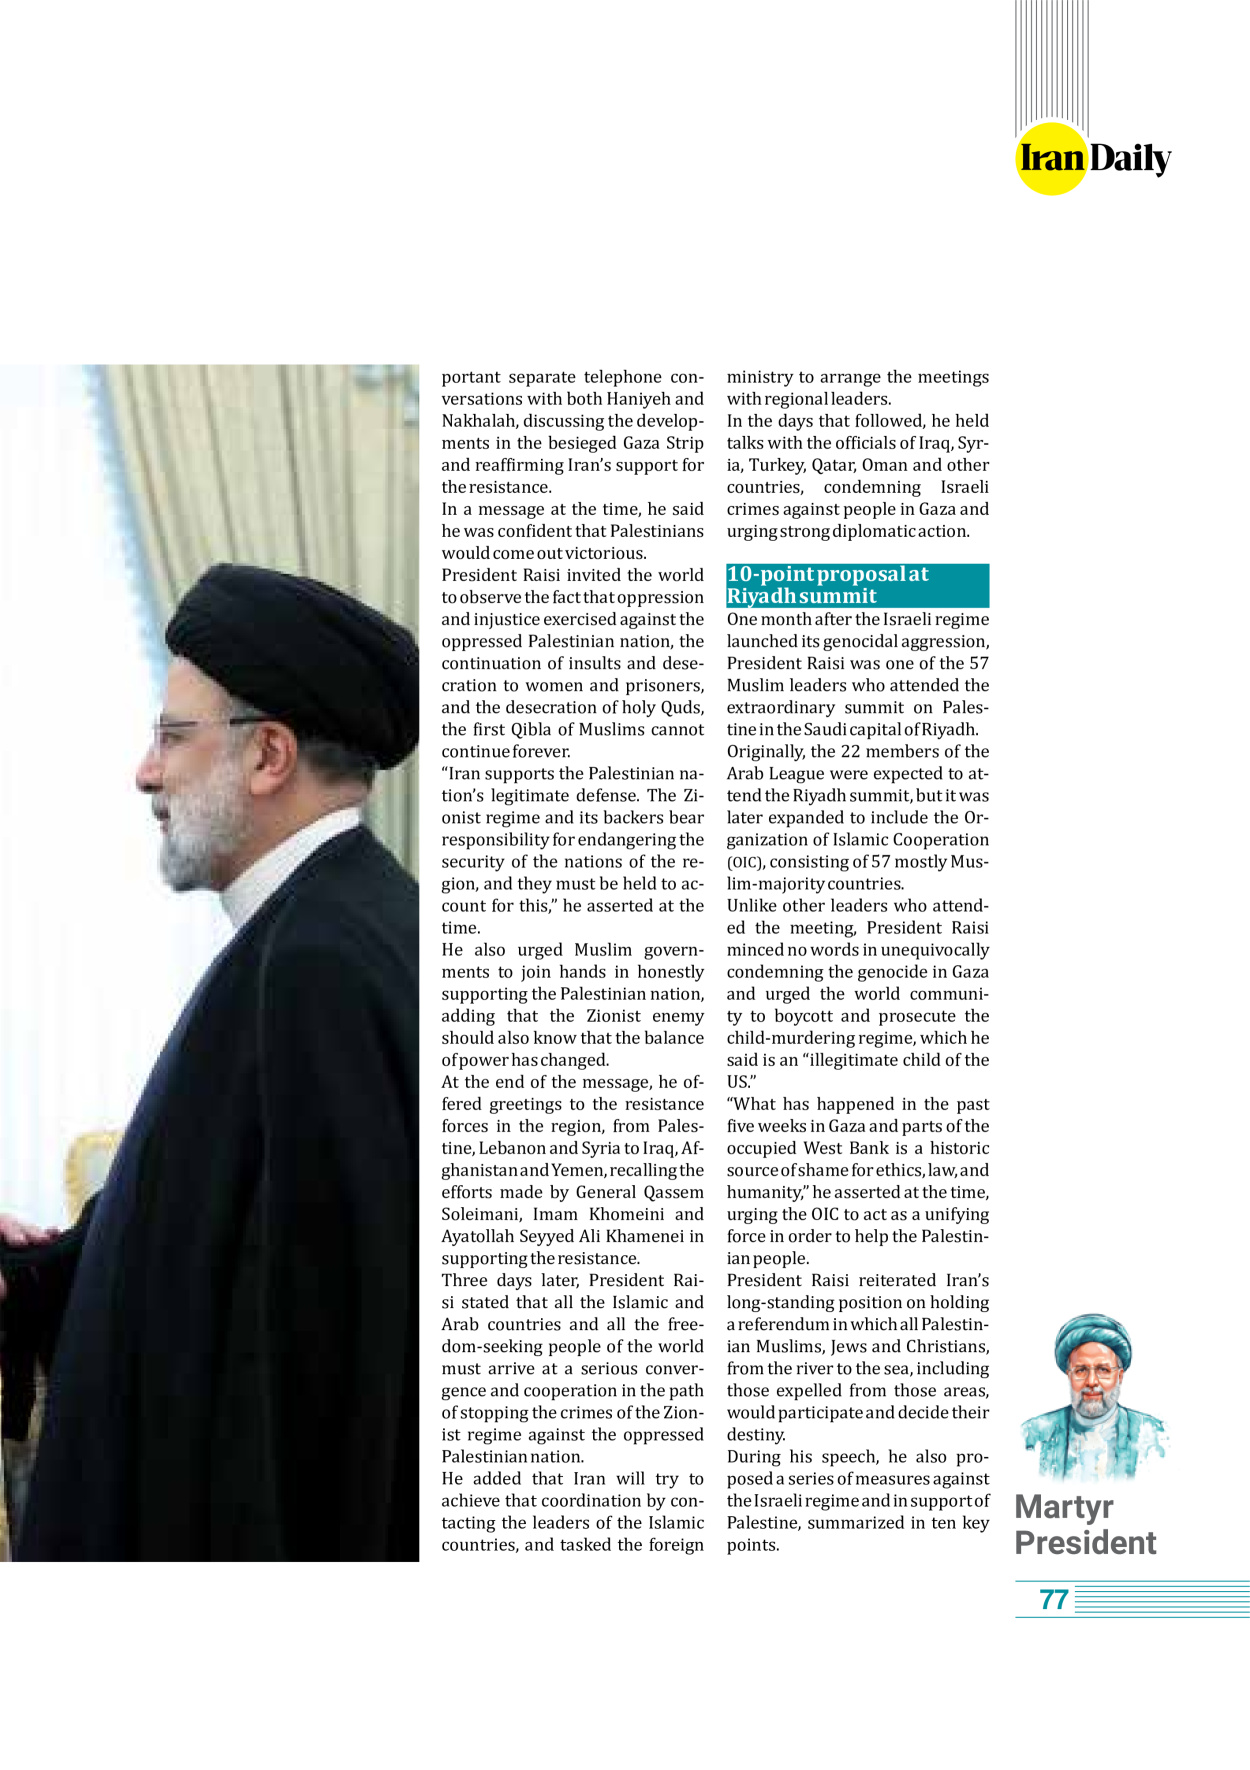 روزنامه ایران - ویژه نامه وِزه نامه چهلم شهید رییسی( انگلیسی) - ۱۷ تیر ۱۴۰۳ - صفحه ۷۷